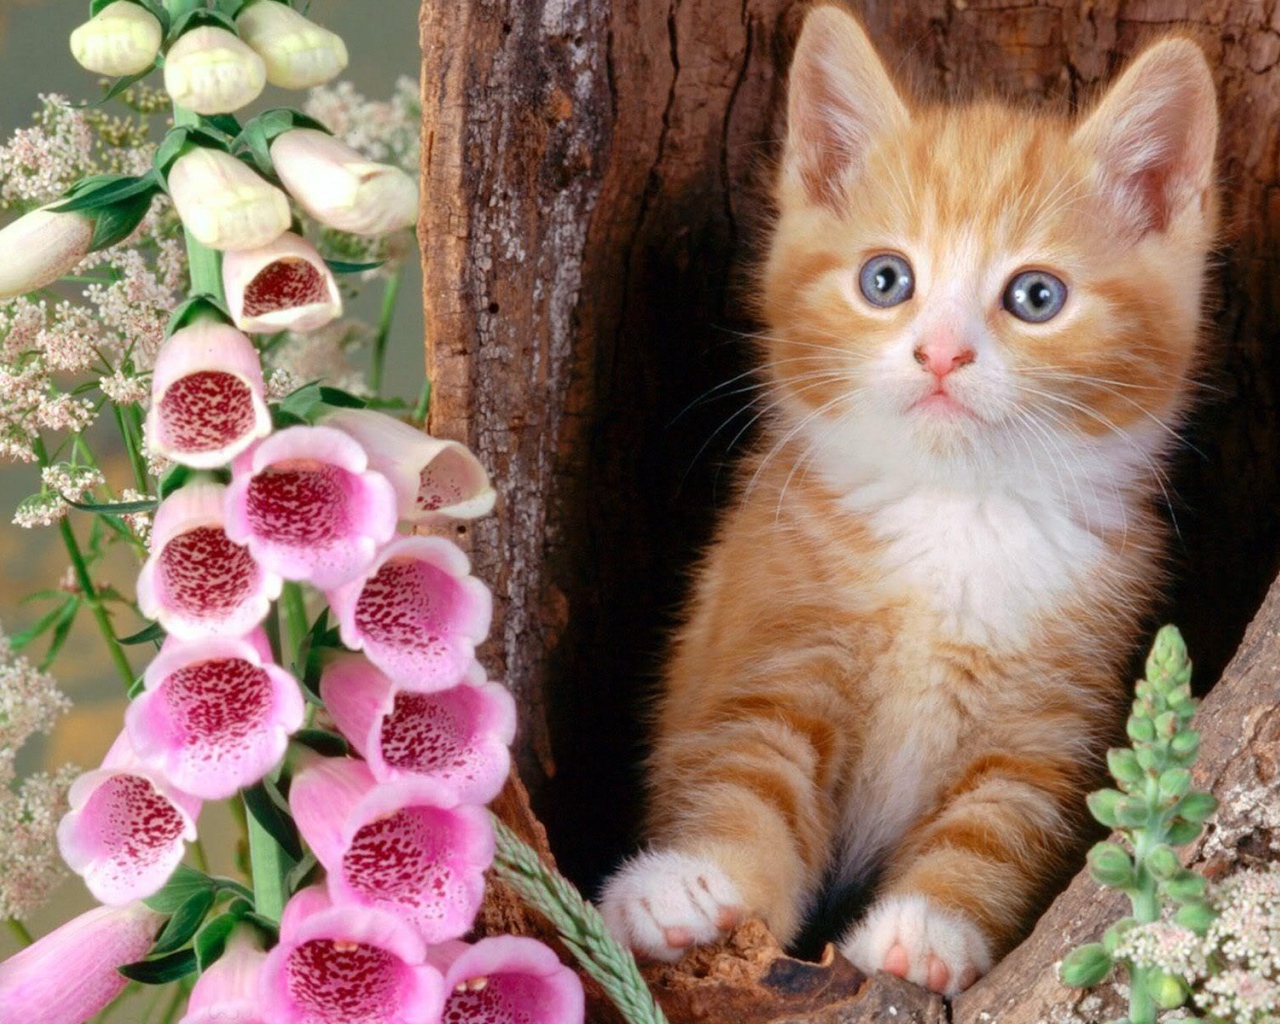 Котенок в дупле с цветками